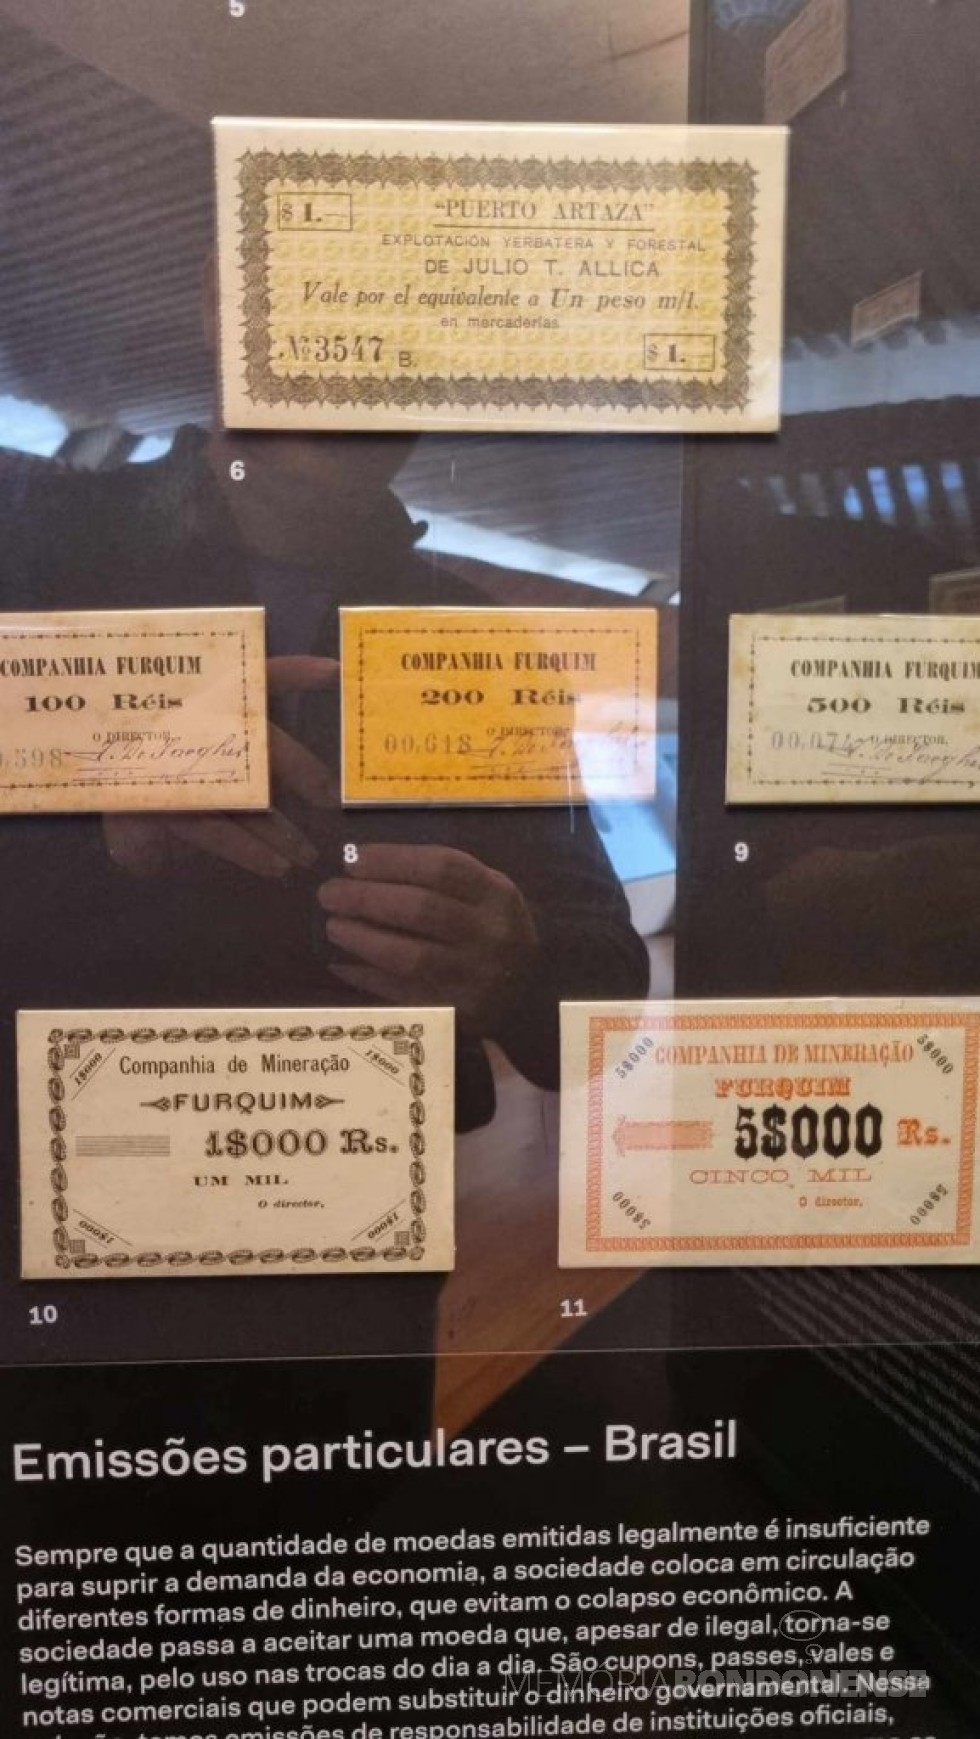 || Cédulas monetárias emitidas por empresas, com destaque para Puerto Artaza, na seção de Numismática do Museu do Ipiranga.
Imagem: Acervo e crédito Adriano Ramon Lani - FOTO 22 _ 